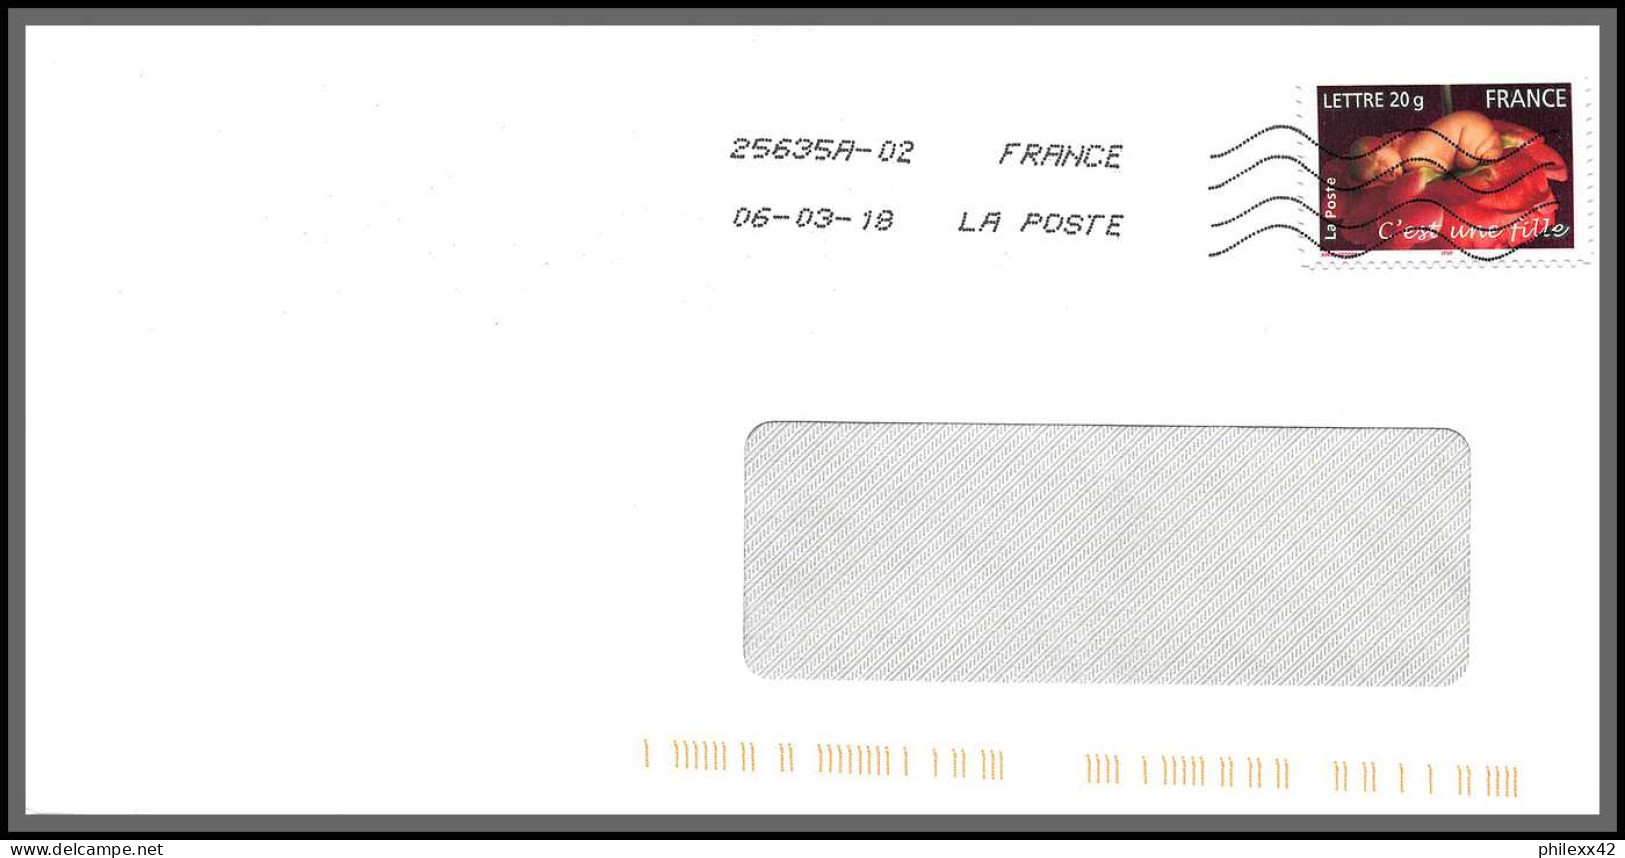 95896 - lot de 16 courriers lettres enveloppes de l'année 2018 divers affranchissements en EUROS